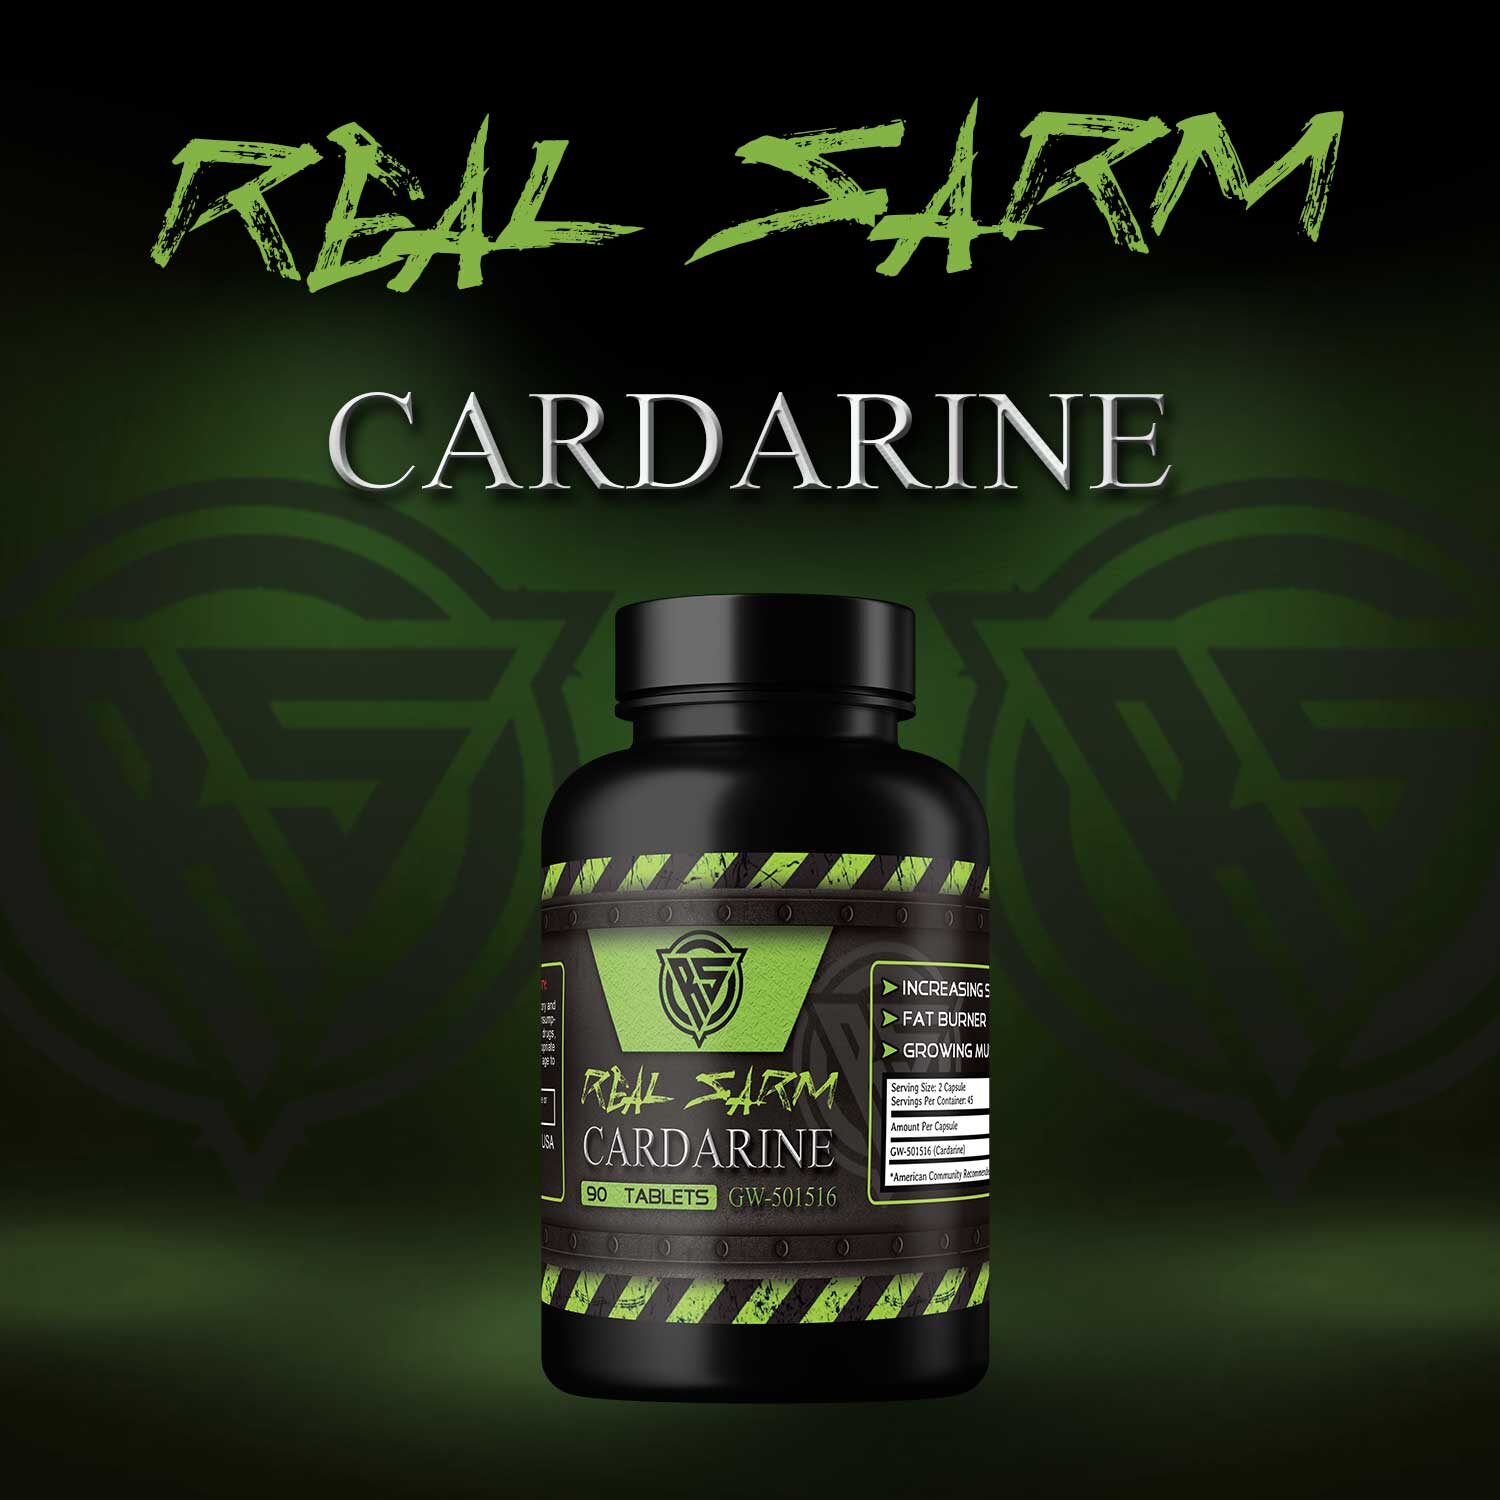 Cardarin or GW501516 SARMs